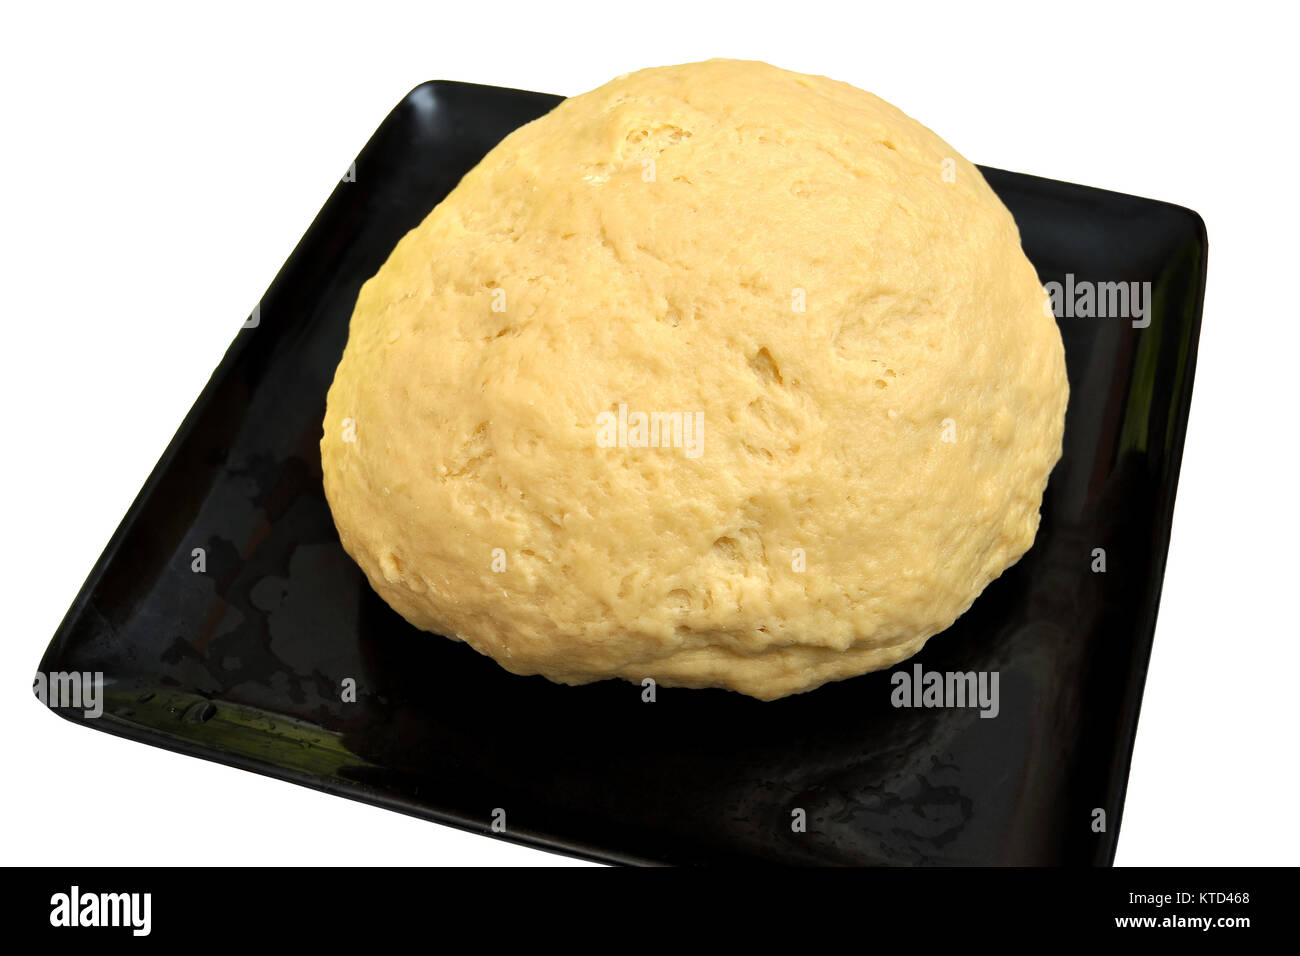 Imagen aislada de aumentado masa de levadura para pan o pizza en una bandeja para hornear negro Foto de stock